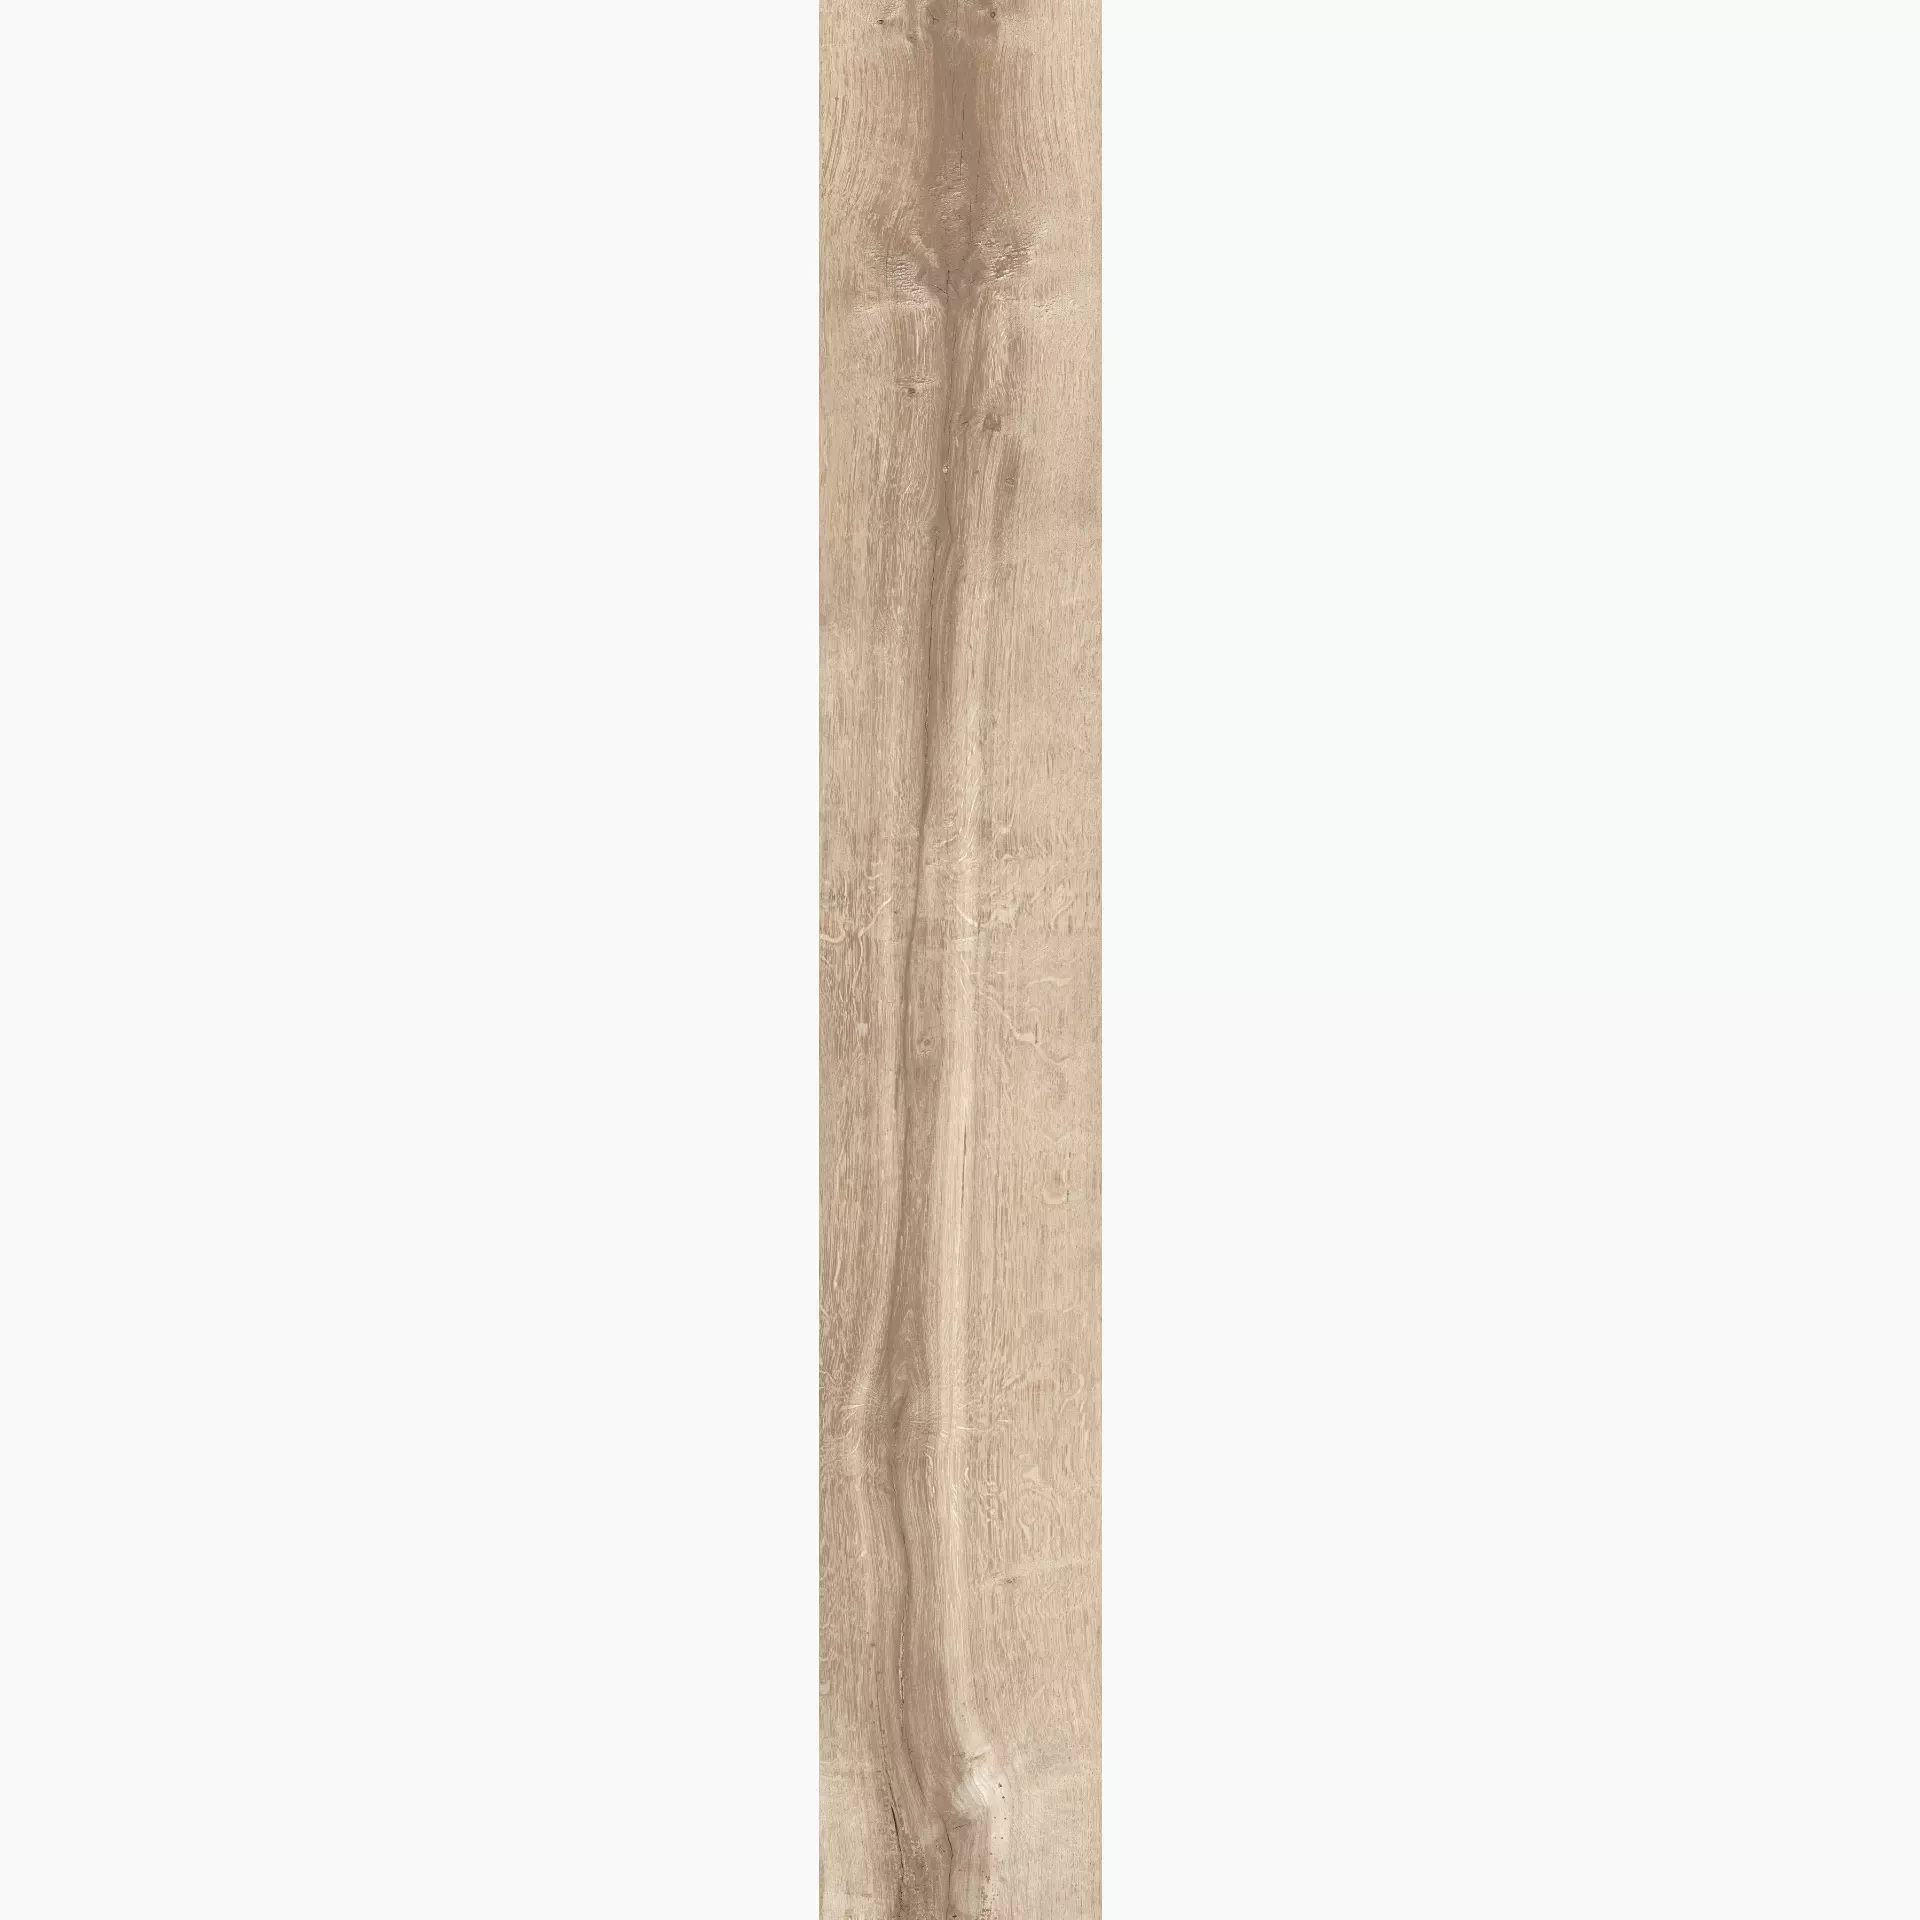 KRONOS Woodside Oak Naturale Oak 6506 natur 26,5x180cm rektifiziert 9mm